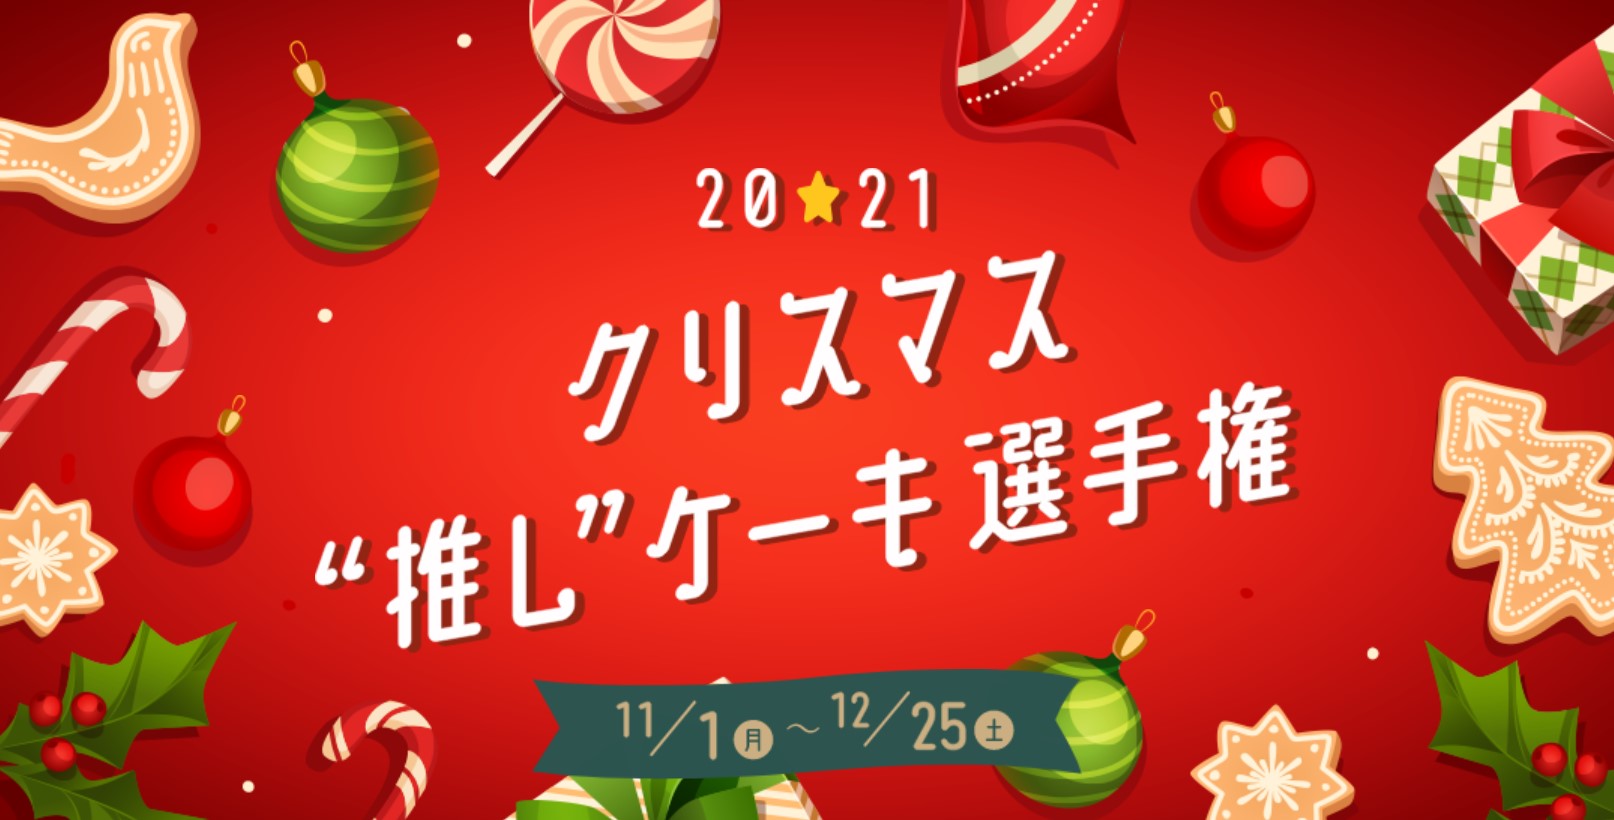 2021年誕生のスイーツショップ「BUTTER STATE's」。大丸東京店の「クリスマス“推し”ケーキ選手権」で1位を獲得しましたのサブ画像1